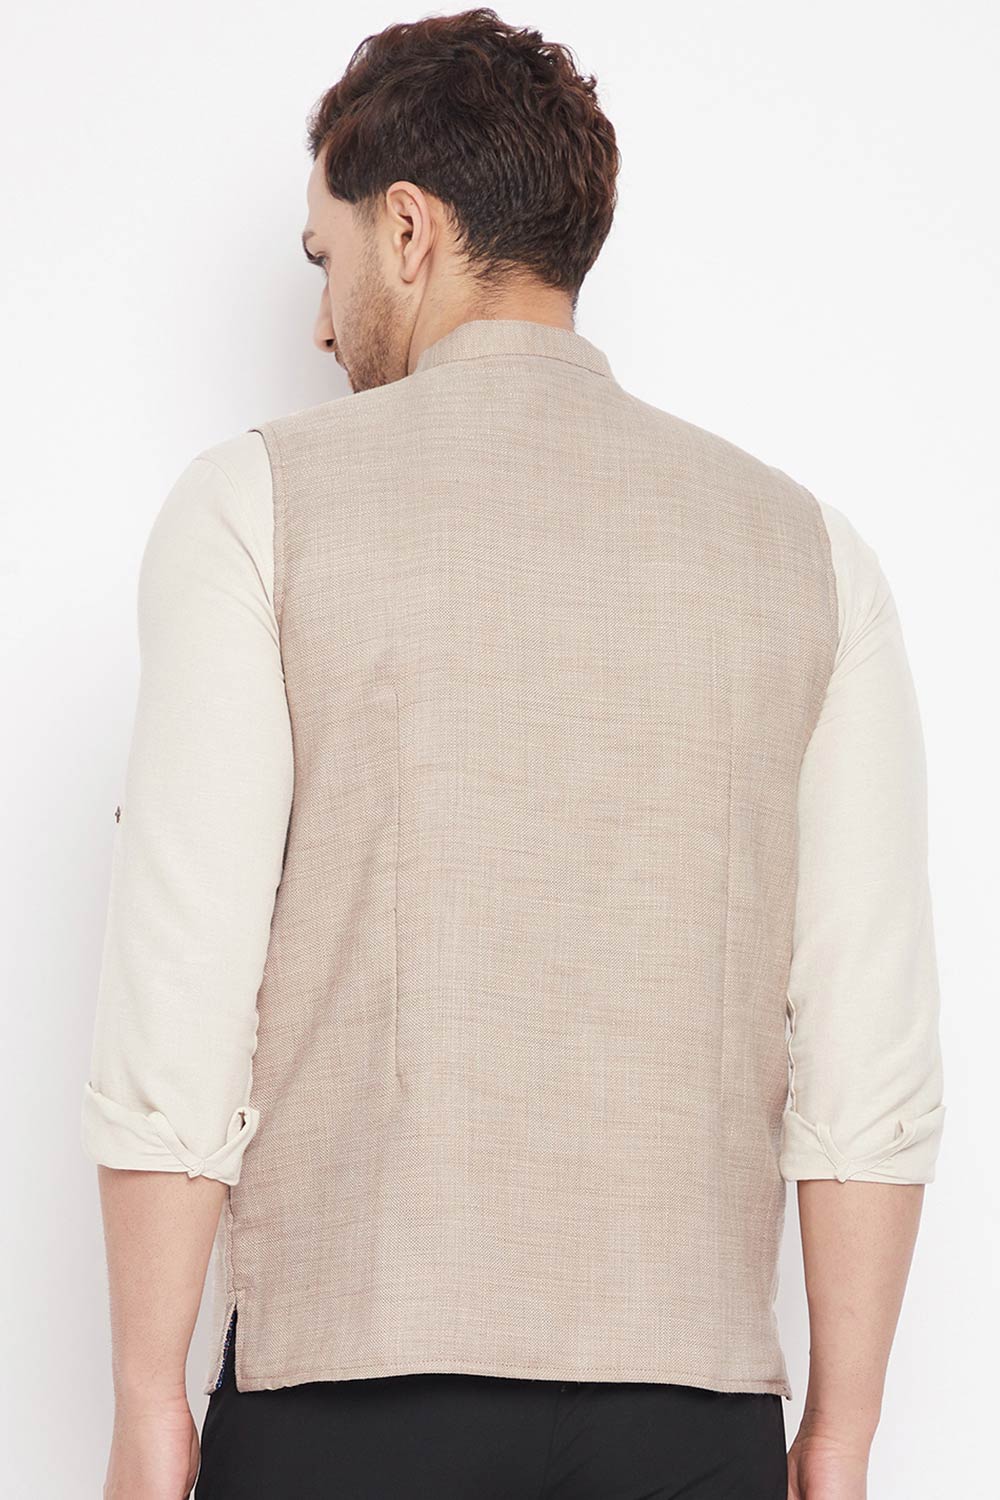 Buy Men's Linen Solid Nehru Jacket in Cream